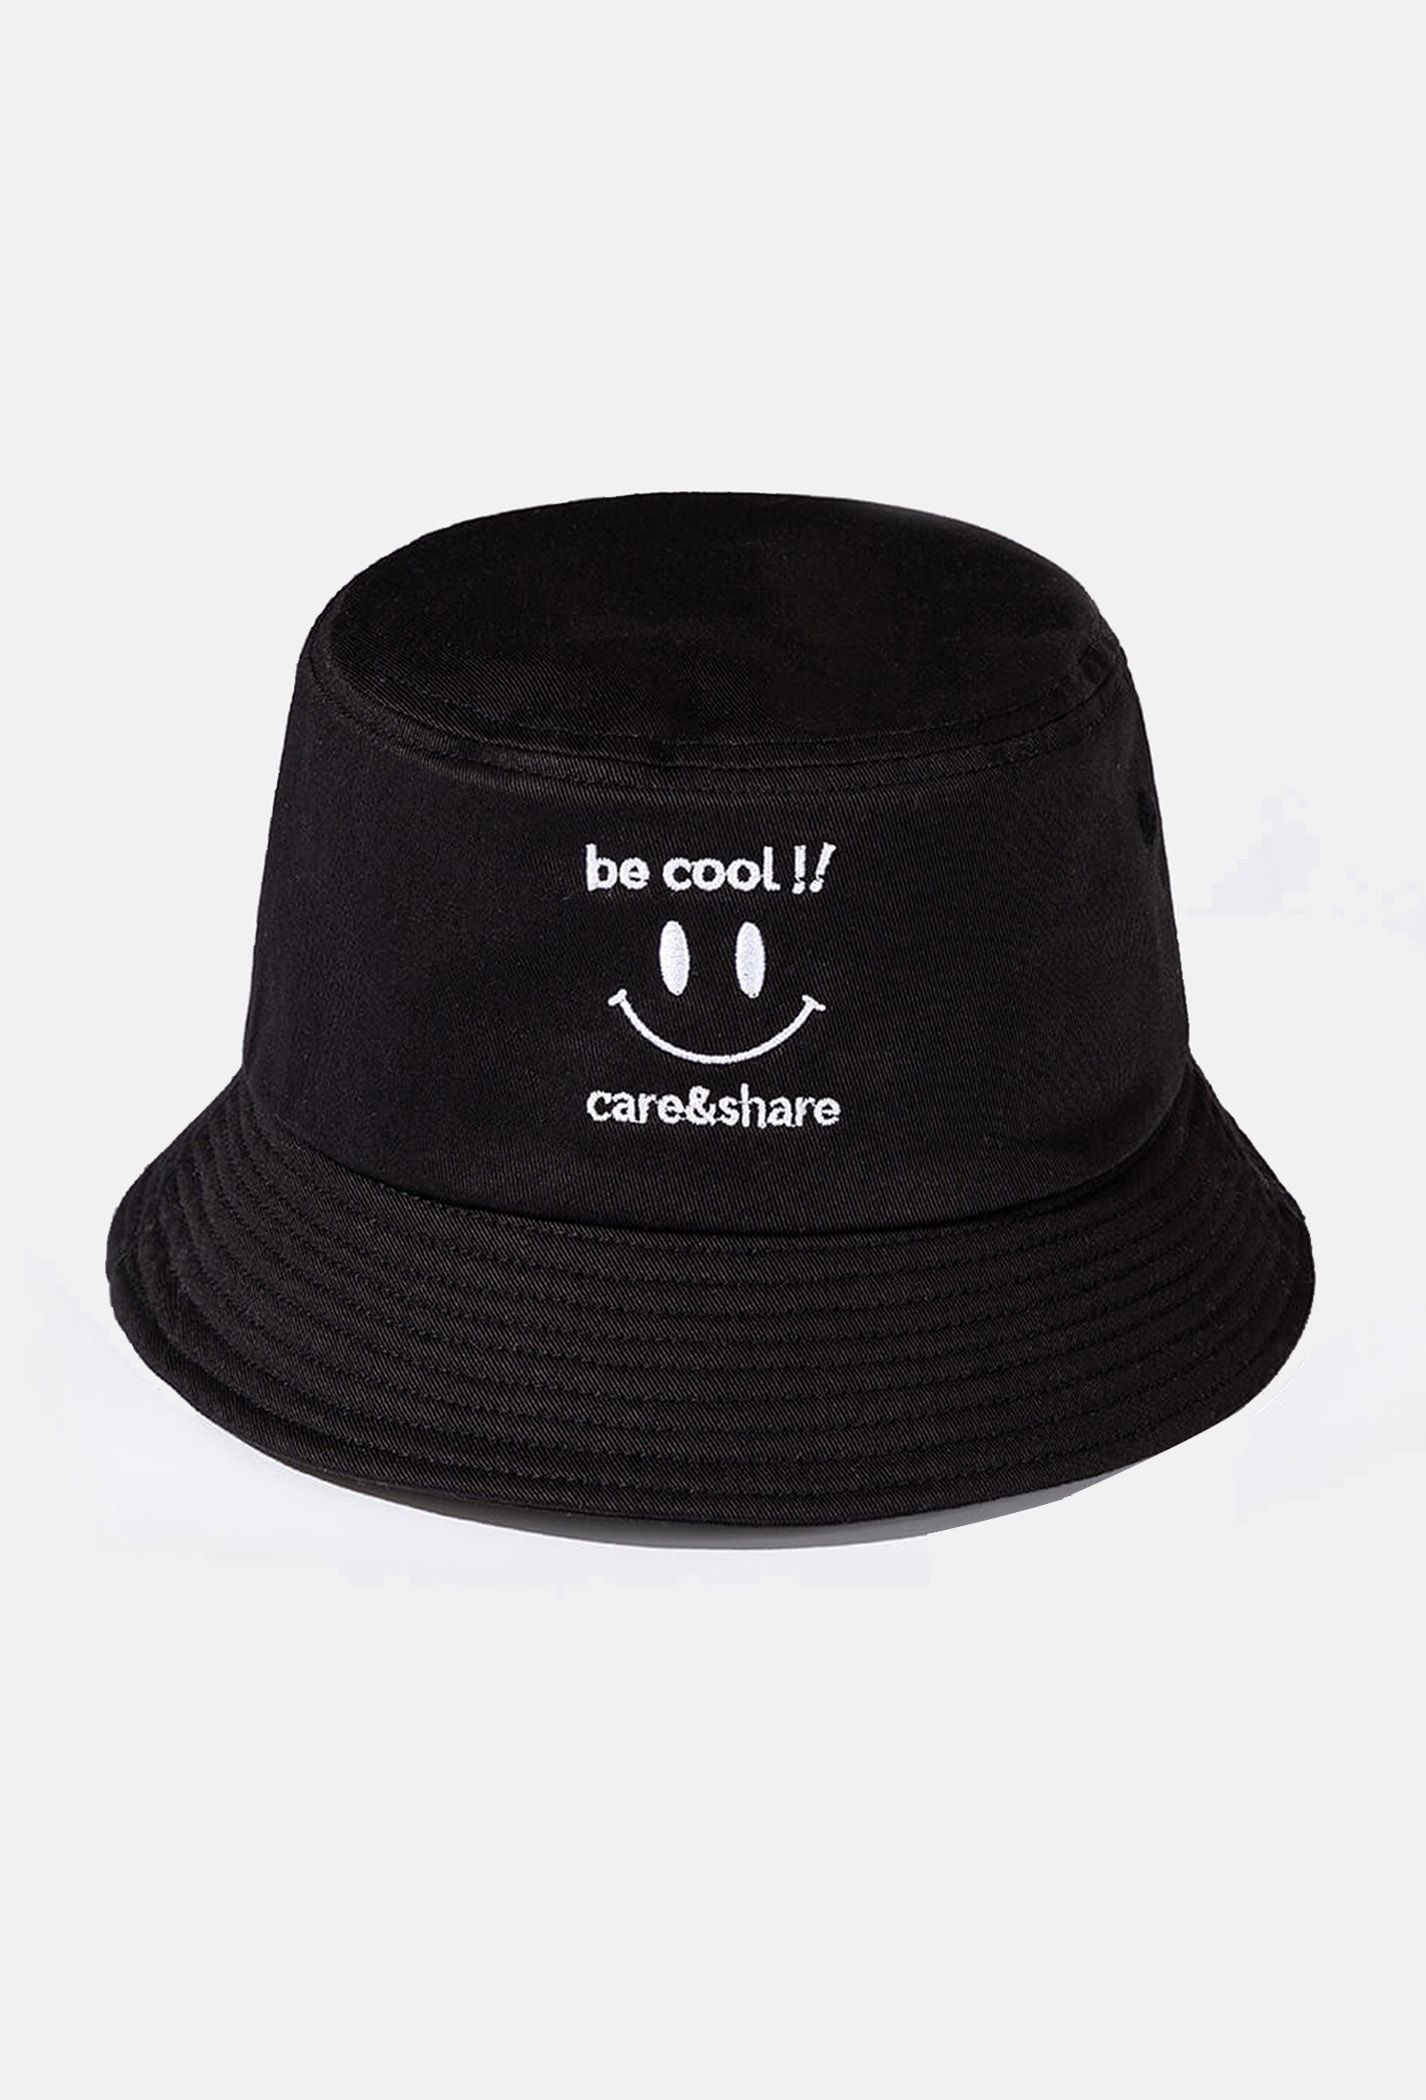 Flash sale - Mũ/Nón Bucket Hat thêu Be Cool!! Đen